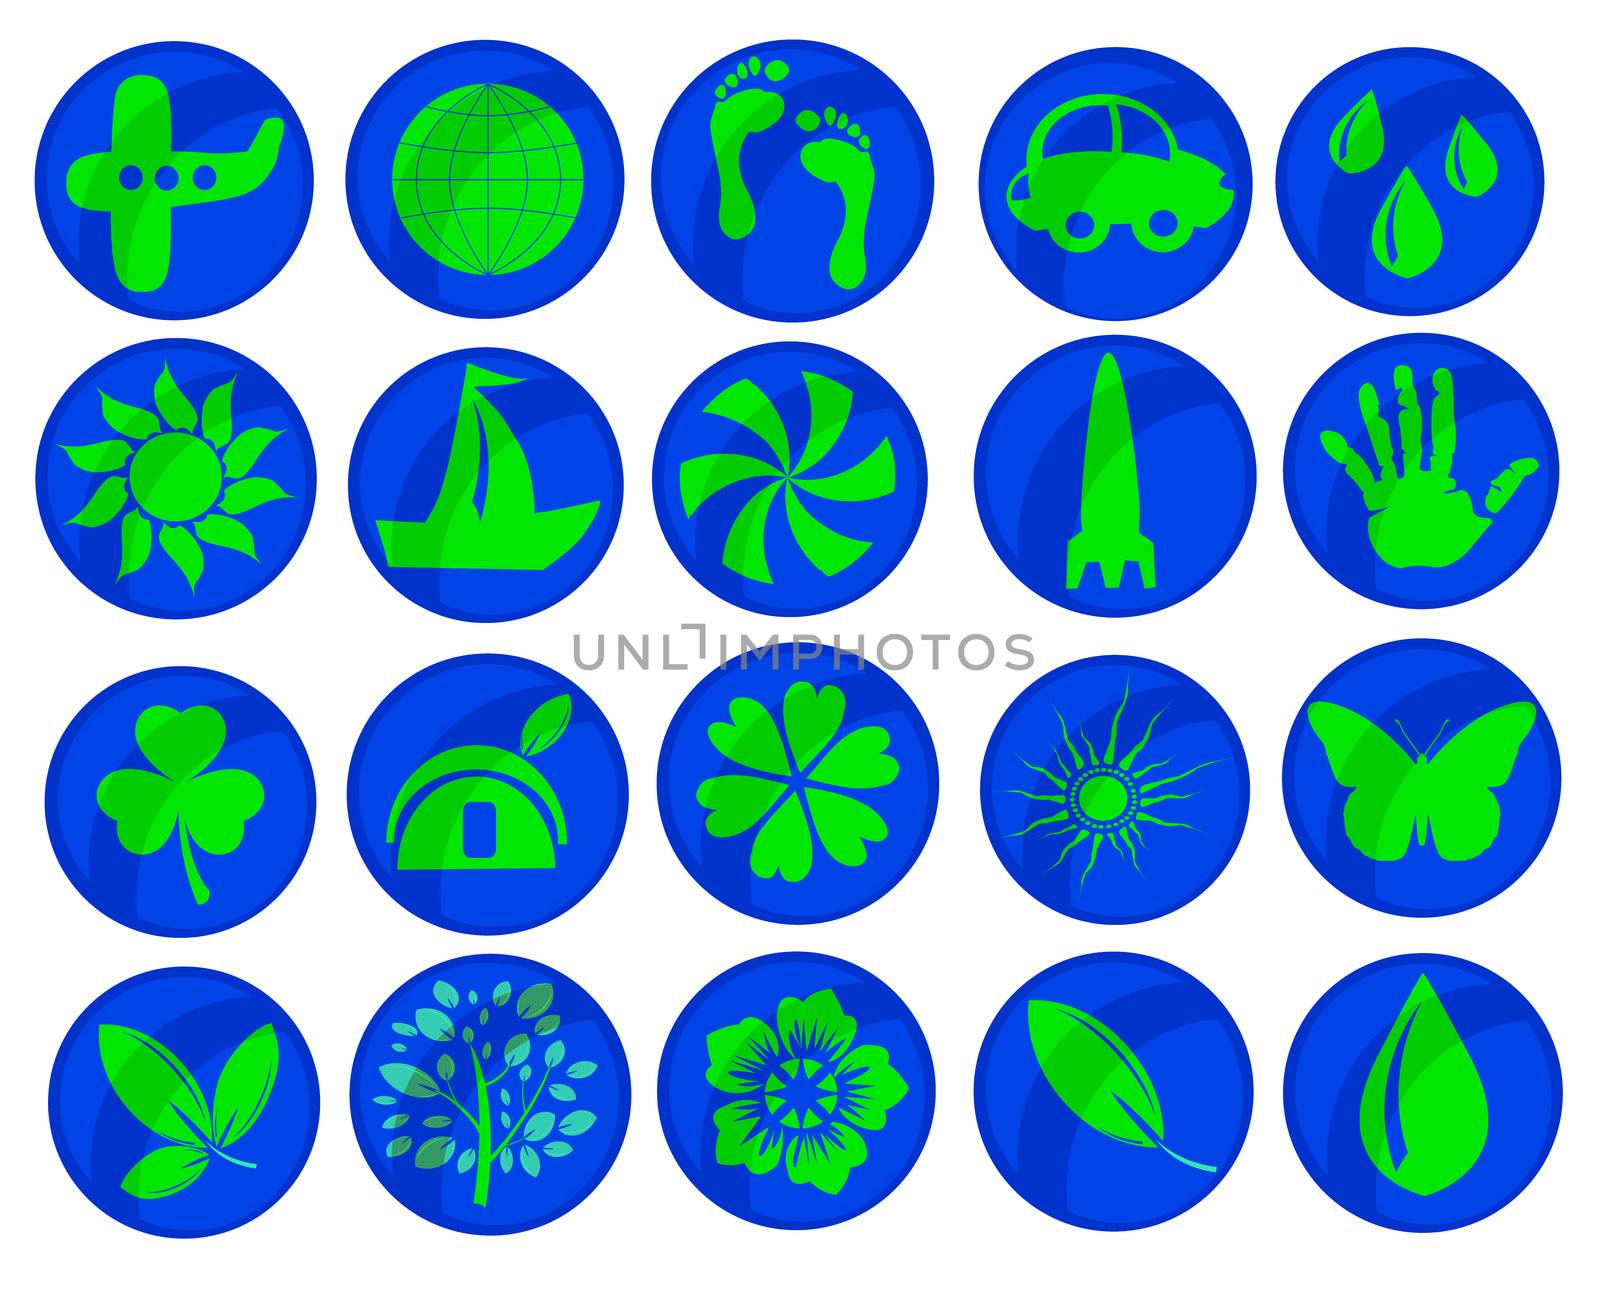 Stock photo: an image of a set of various simbols